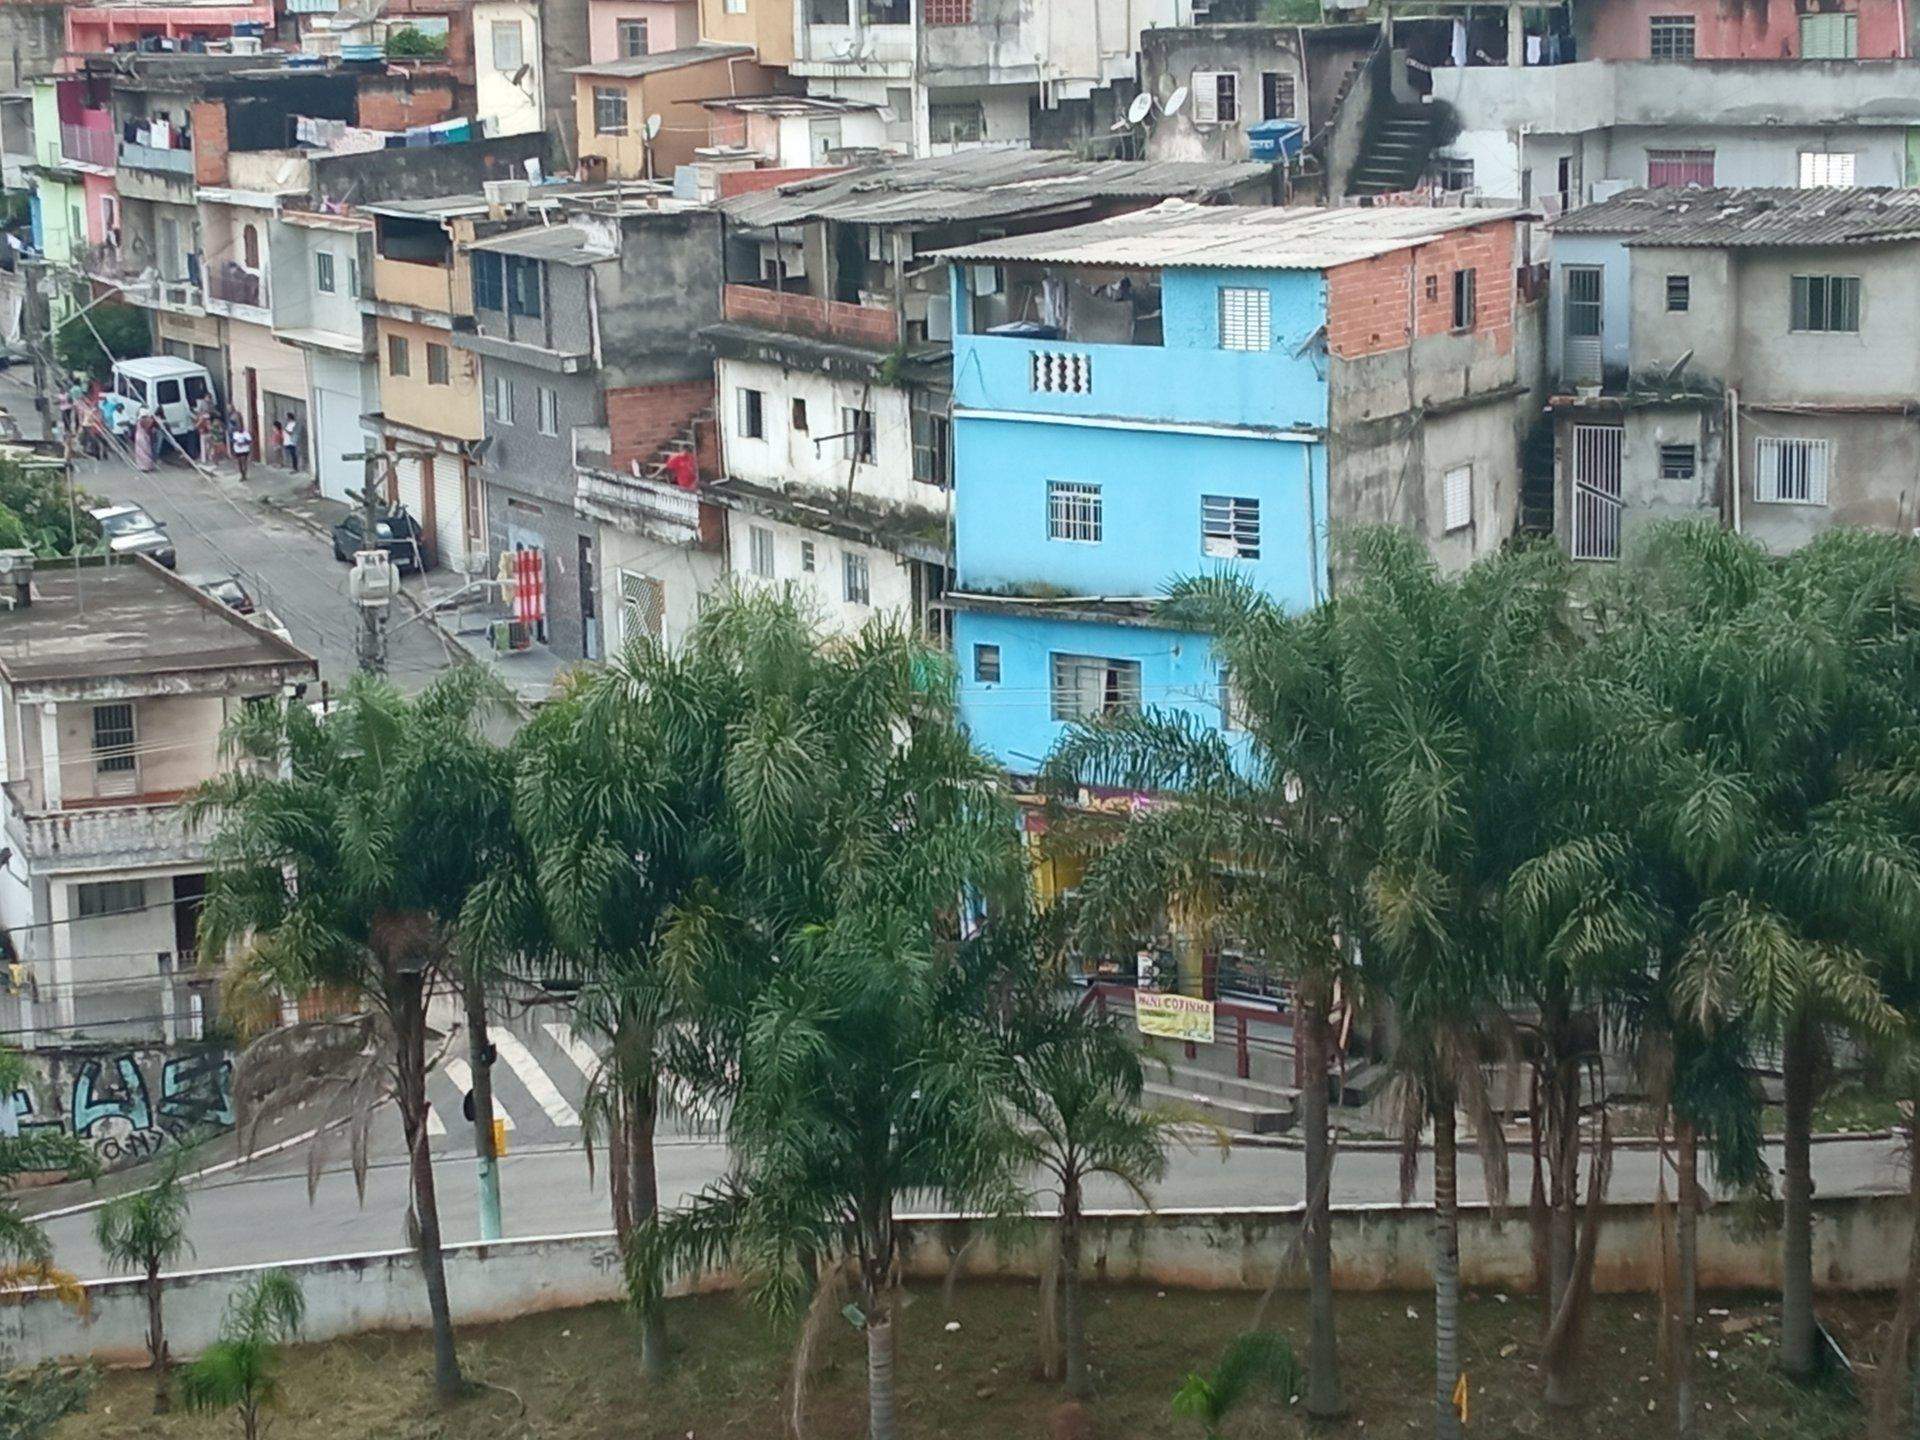 Бразильский самострой. Как выглядят дома, которые в Бразилии собирают из подручных материалов архитектура,где и как,кто,ремонт и строительство